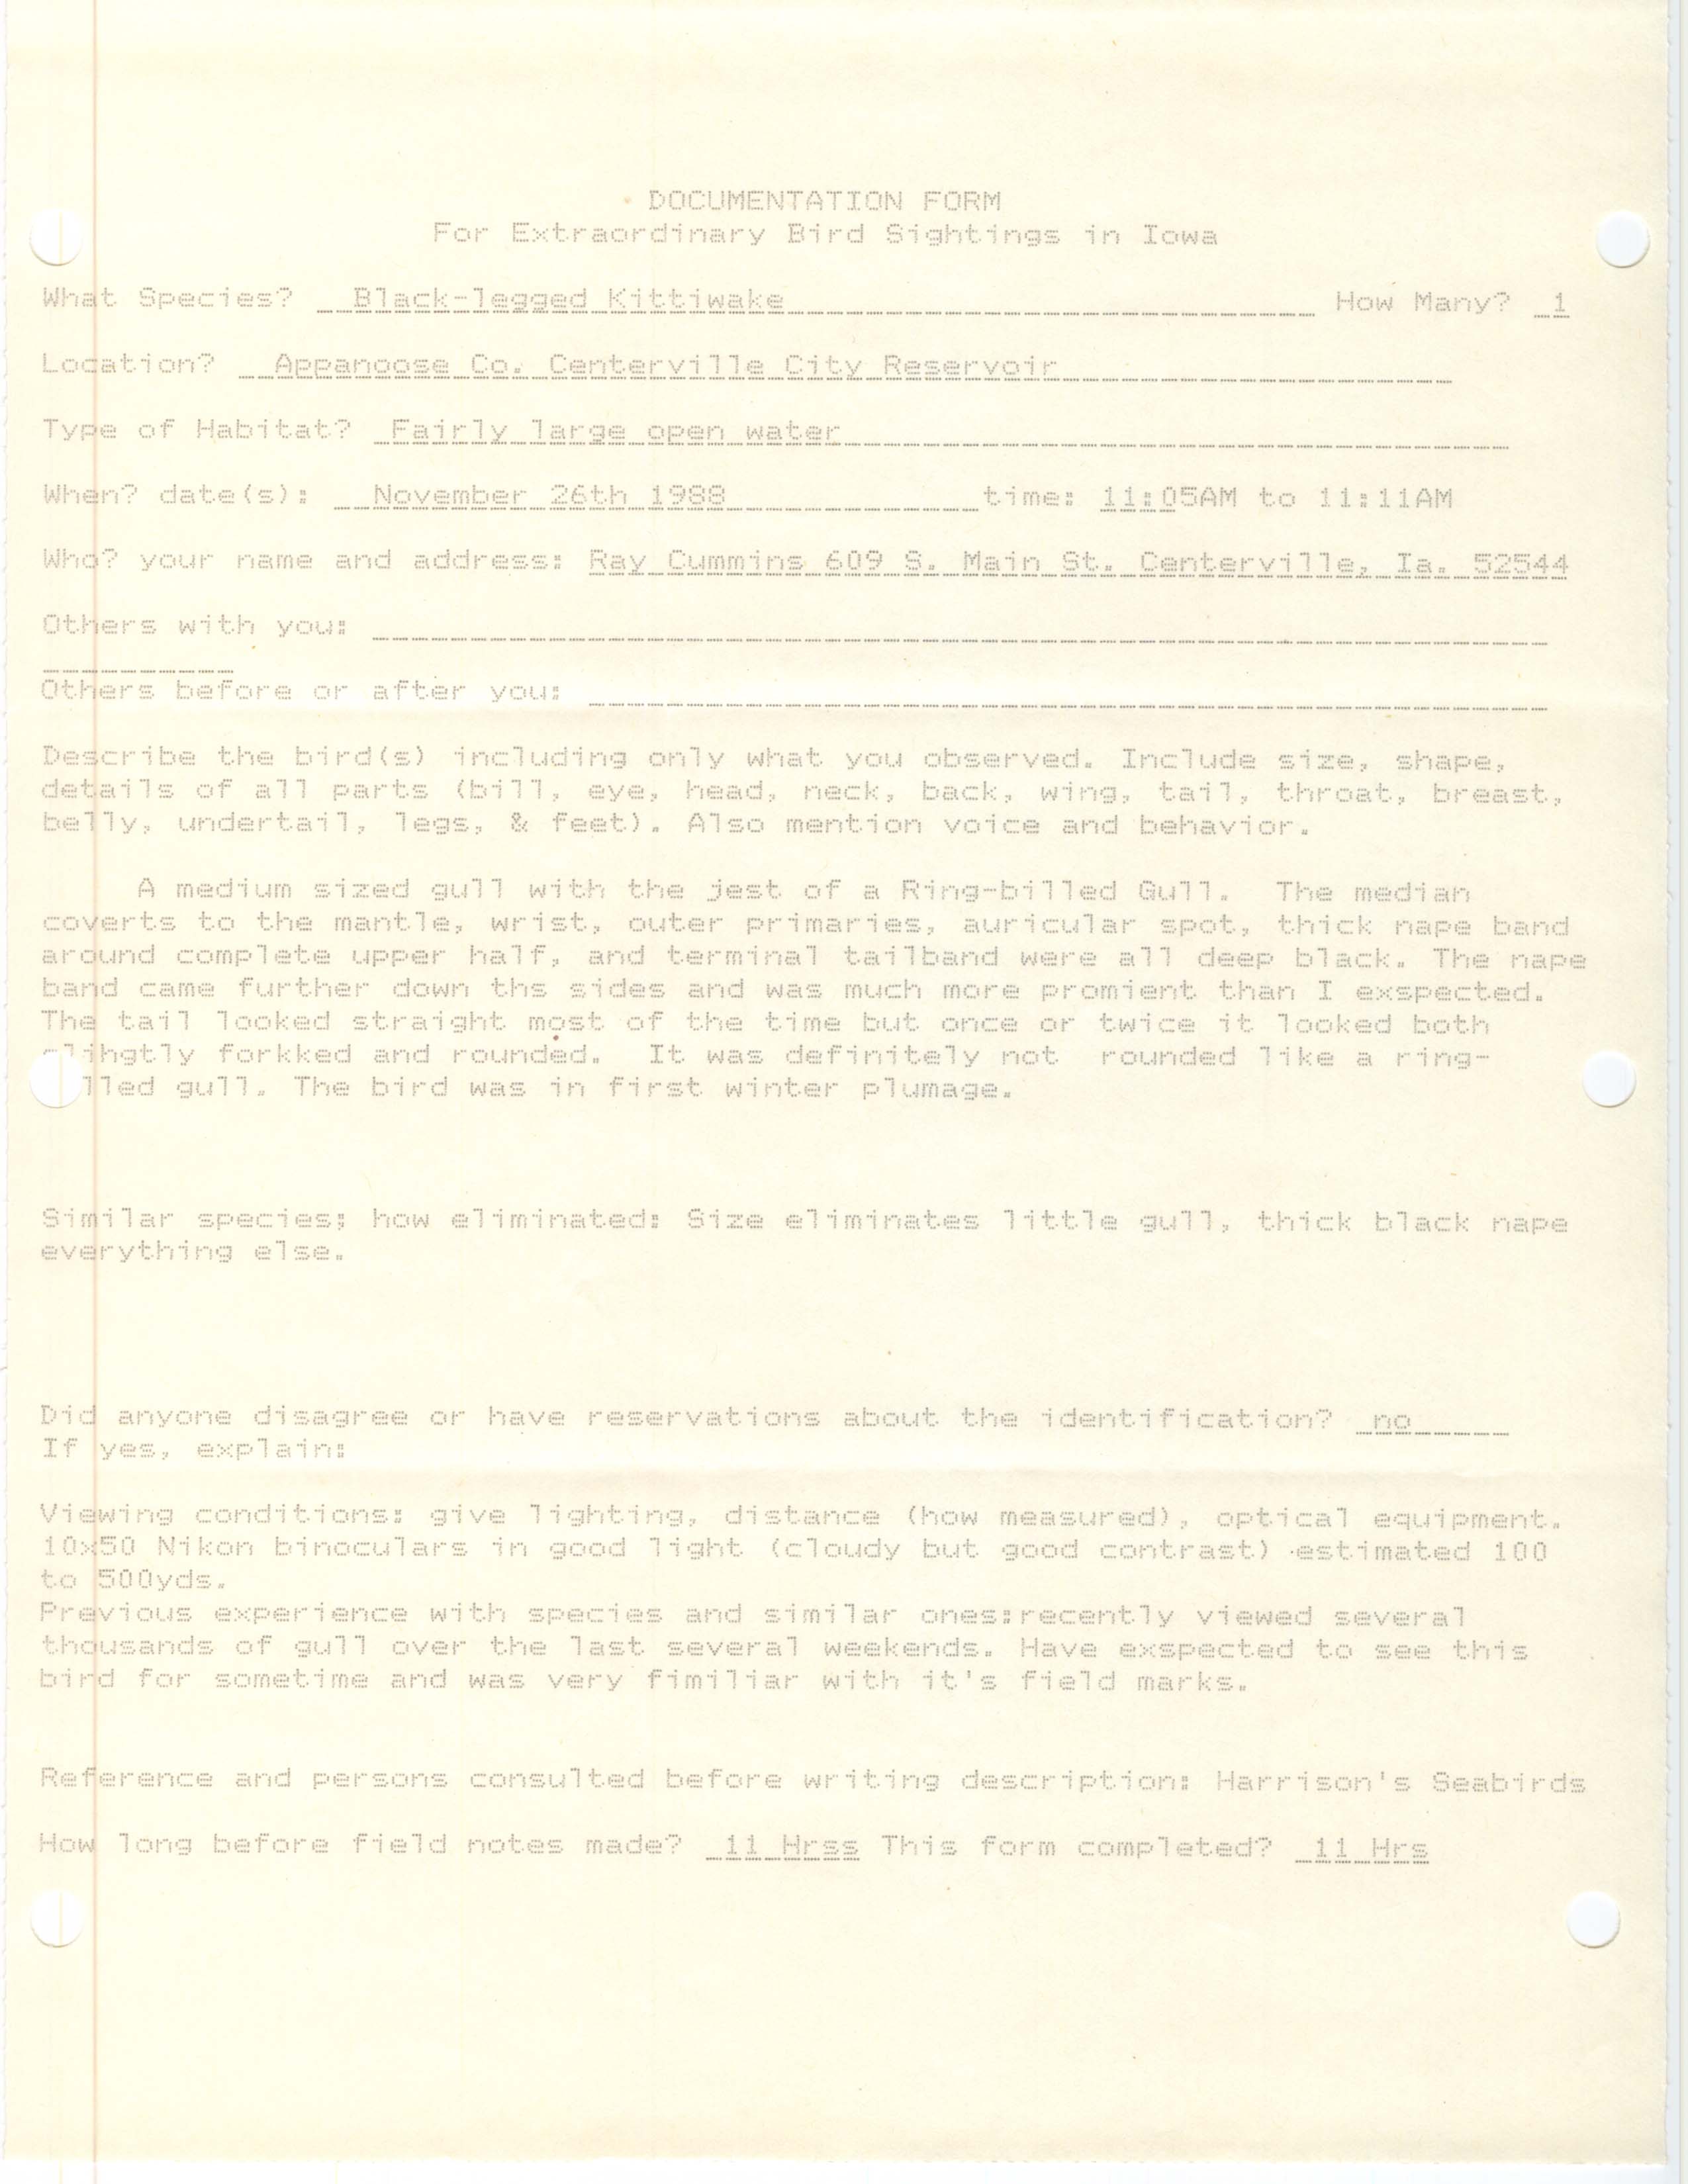 Rare bird documentation form for Black-legged Kittiwake at Centerville City Reservoir, 1988